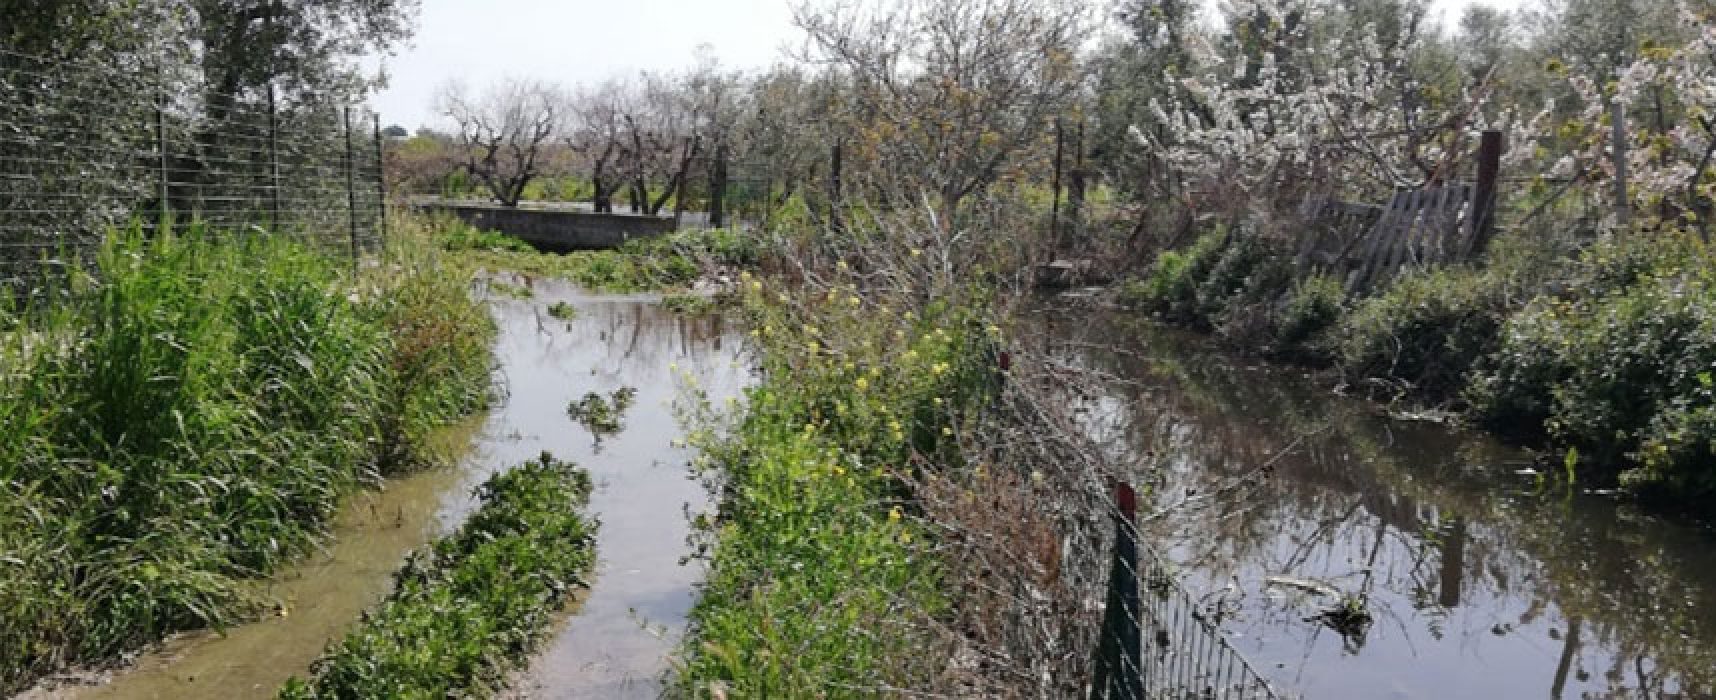 Bisceglie D’Amare segnala problematiche in zona Lama di Macina, “Canale inonda terreni con acque nere”